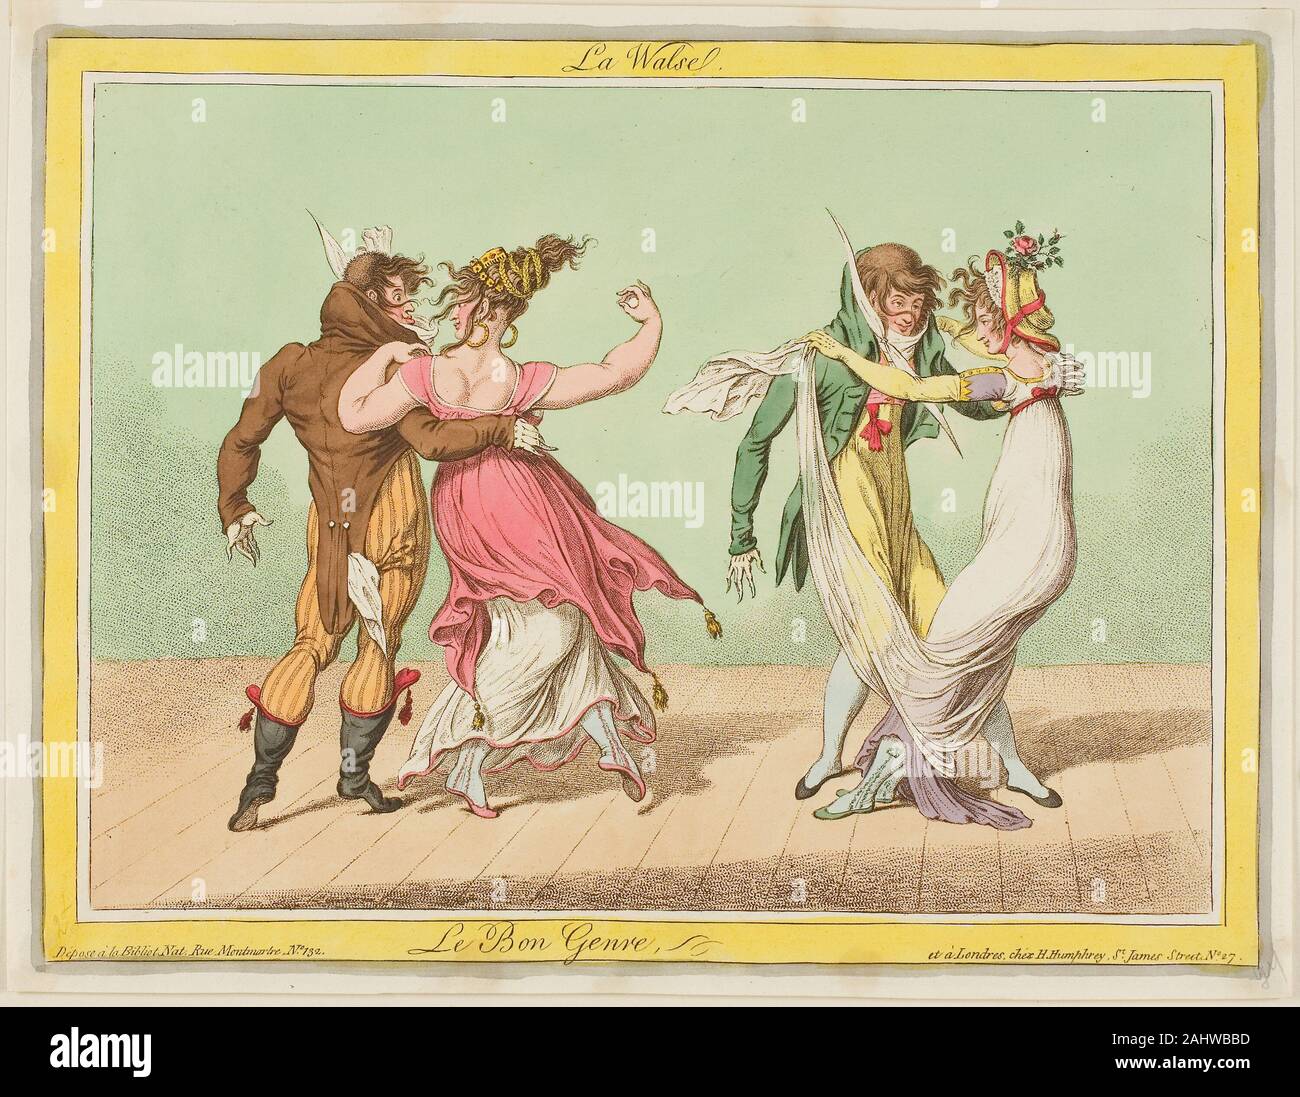 Hannah Humphrey (Publisher). La Walse, von Le Bon Genre. 1801 - 1900. Frankreich. Hand - farbige Gravur auf Creme webte Papier Stockfoto